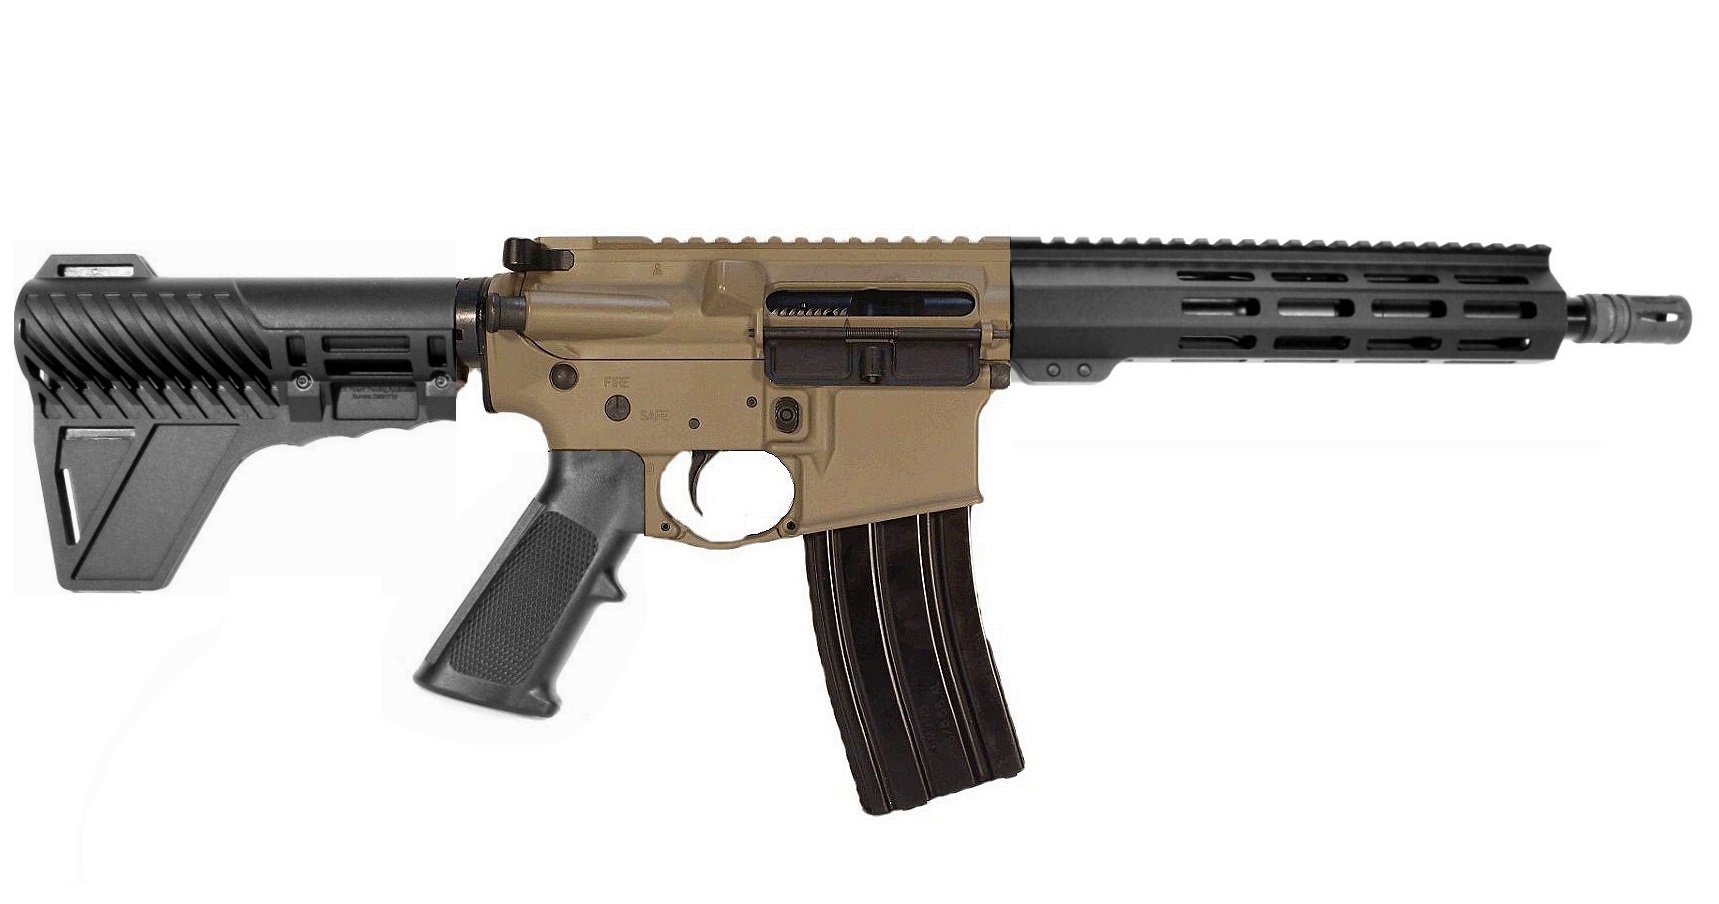 Pro2A Tactical's Patriot 10.5 inch AR-15 350 LEGEND M-LOK Complete Pistol